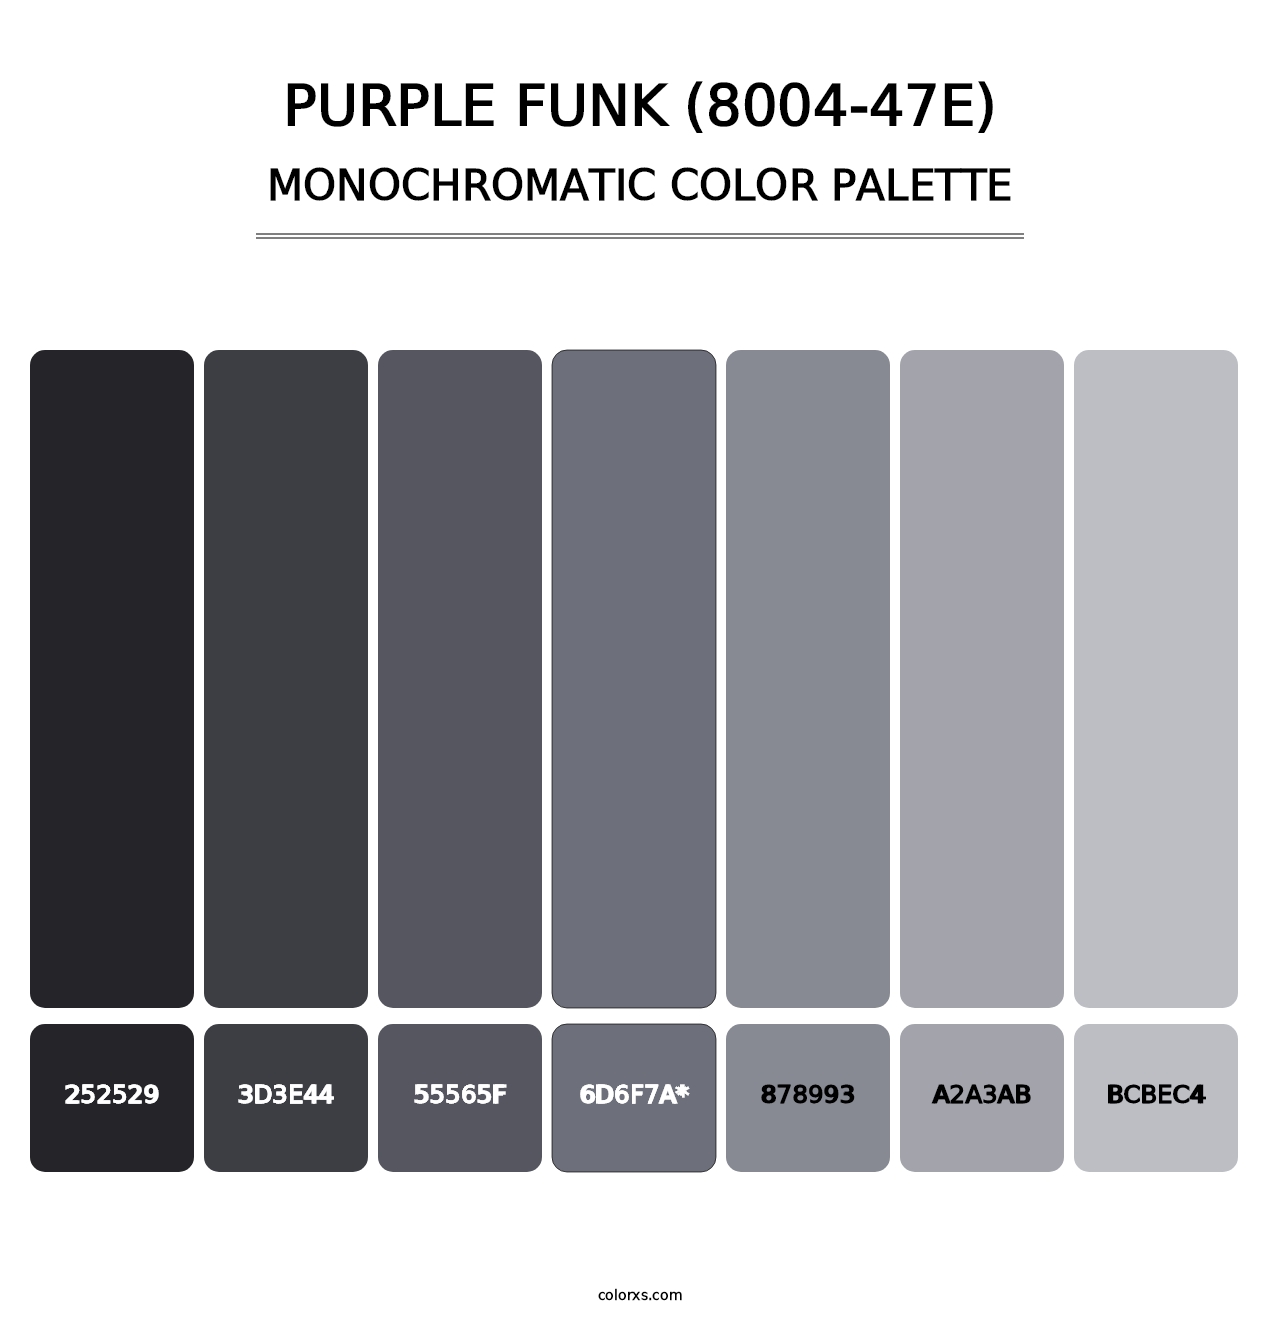 Purple Funk (8004-47E) - Monochromatic Color Palette